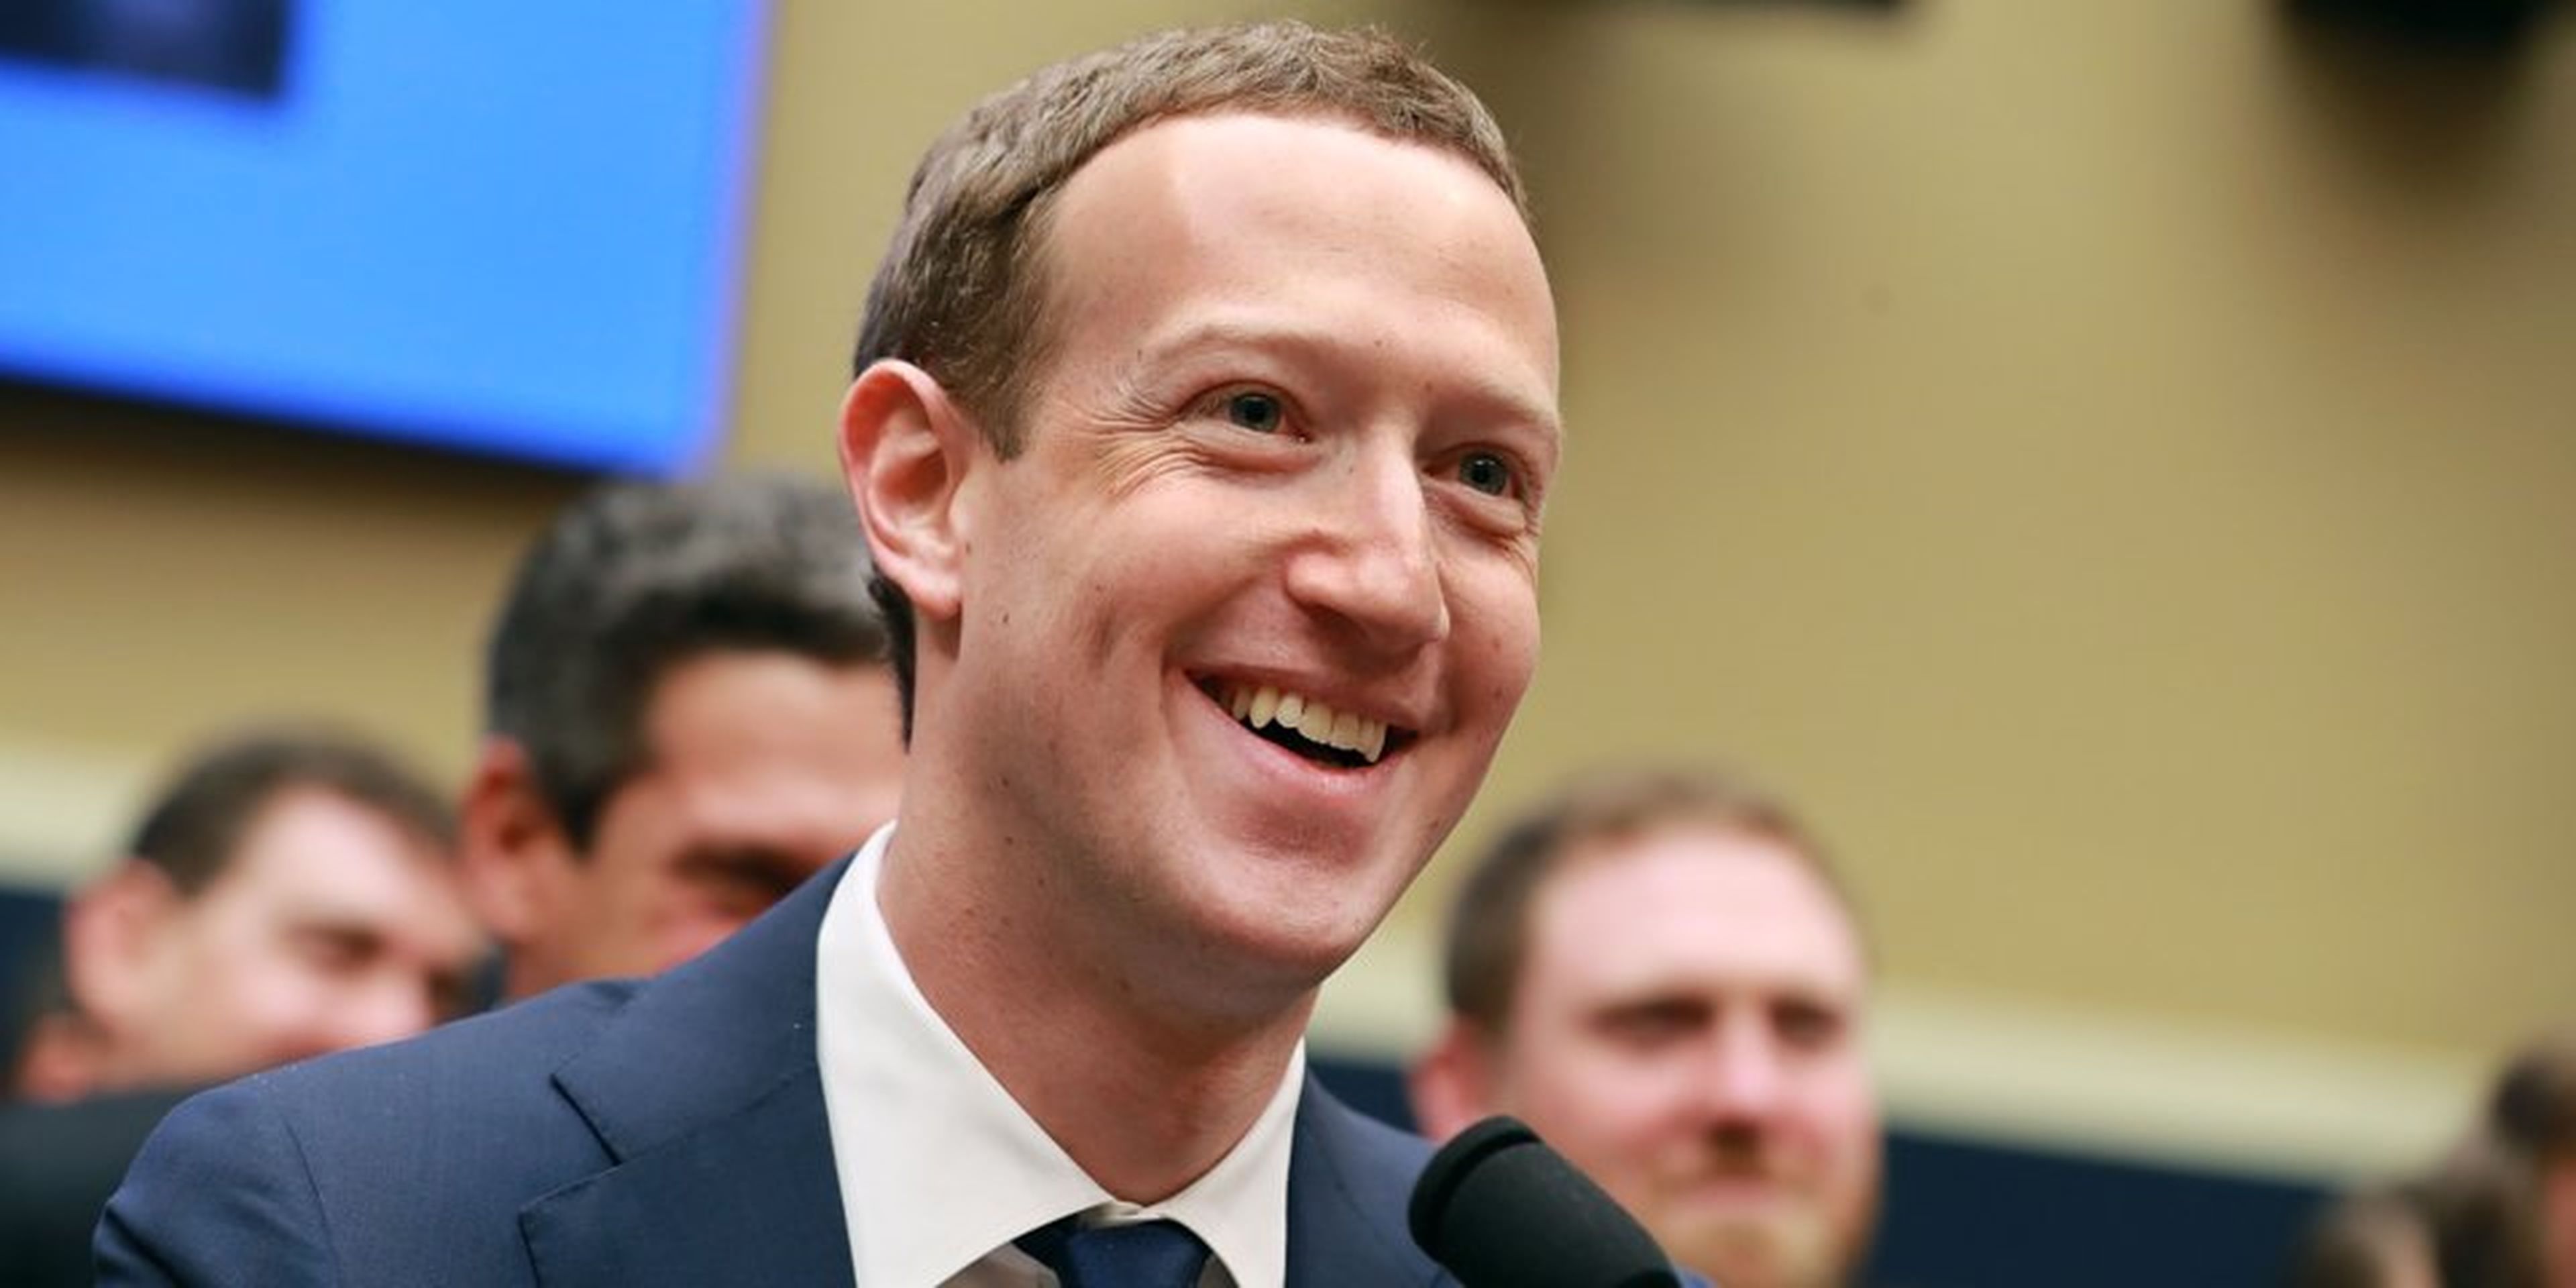 CEO deFacebook, Mark Zuckerberg